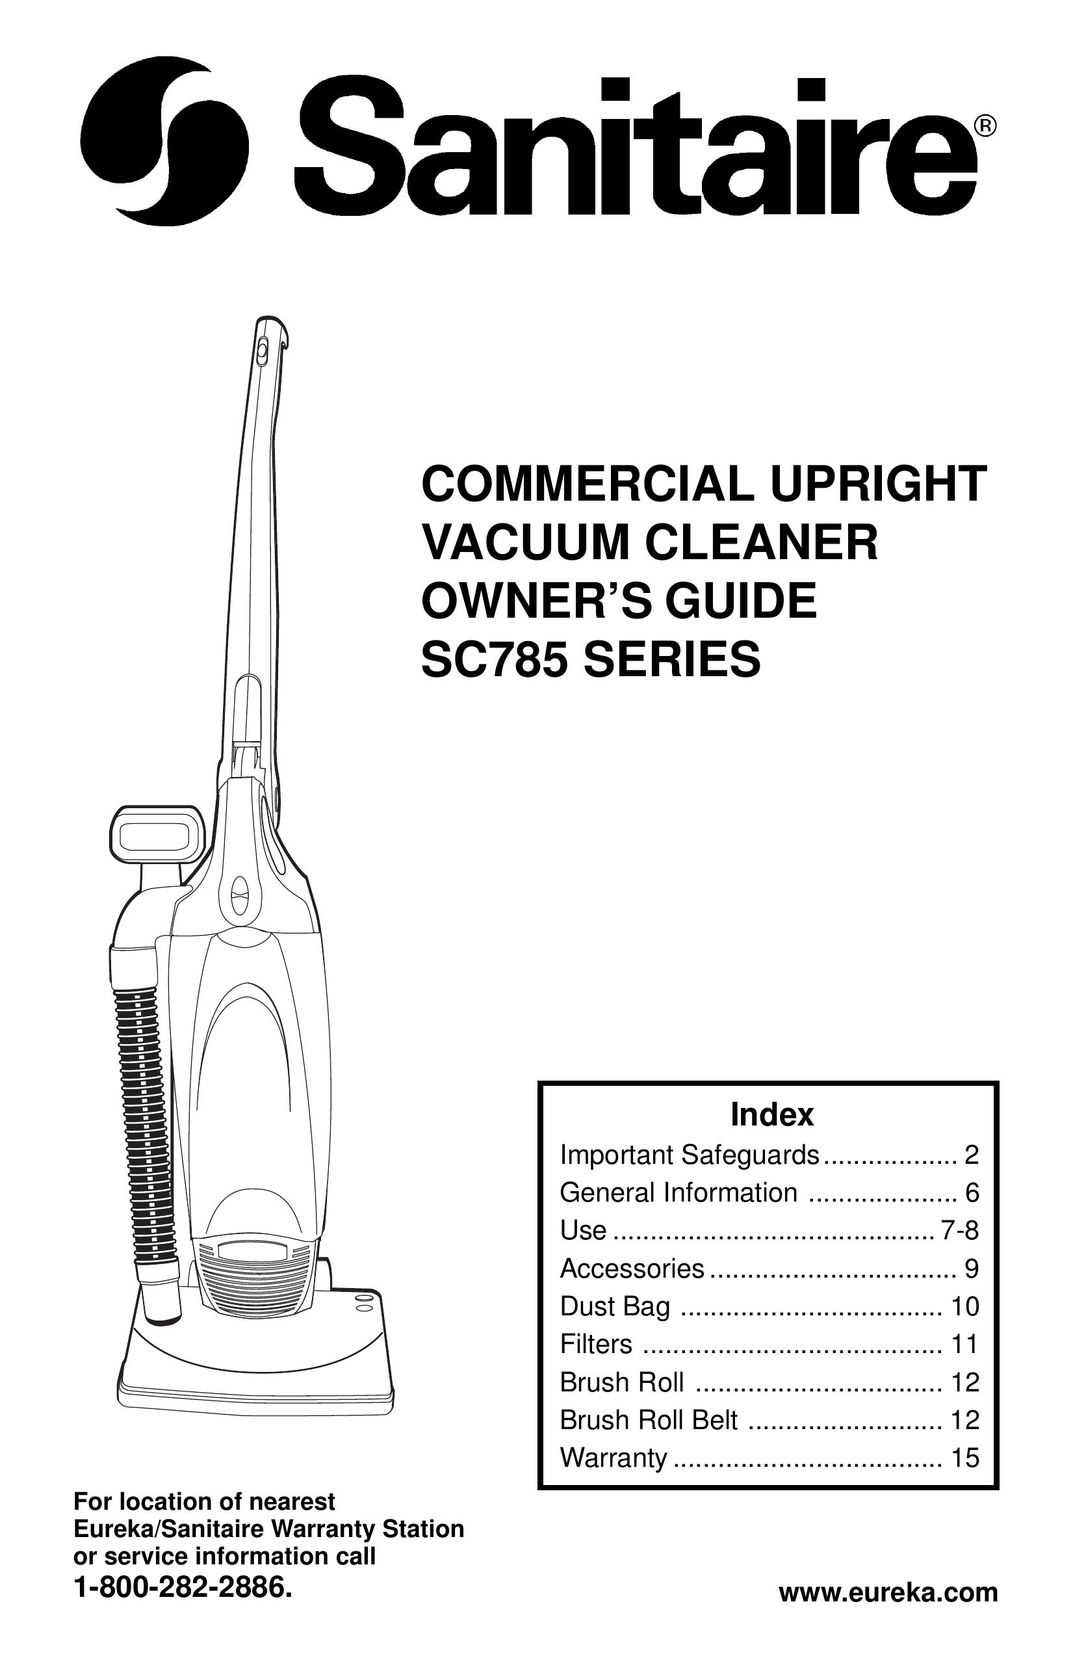 Sanitaire SC785 SERIES Vacuum Cleaner User Manual